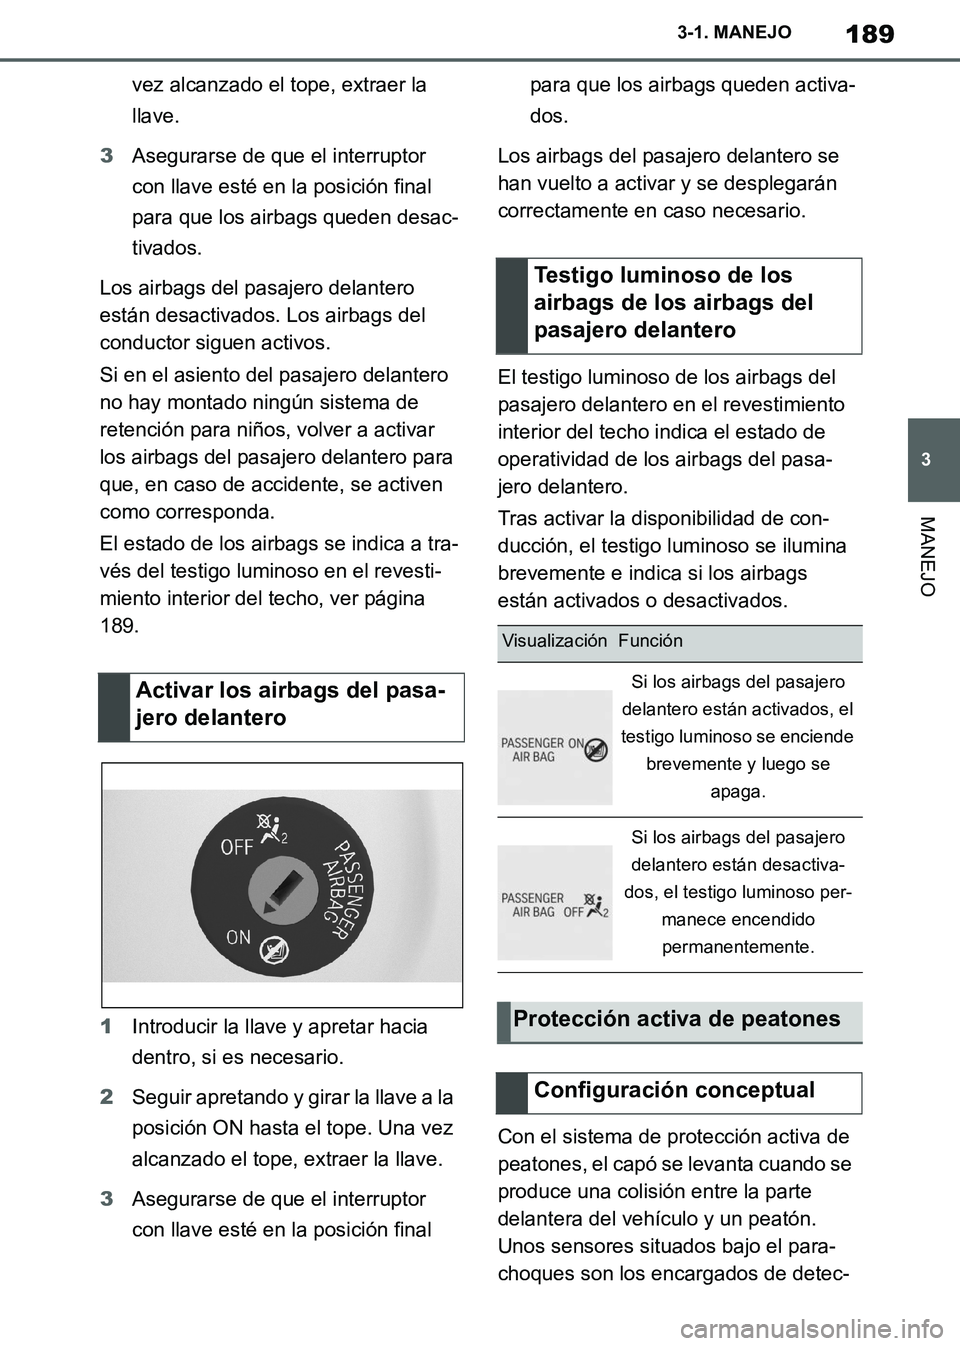 TOYOTA SUPRA 2019  Manuale de Empleo (in Spanish) 189
3
Supra Owners Manual_ES
3-1. MANEJO
MANEJO
vez alcanzado el tope, extraer la 
llave.
3Asegurarse de que el interruptor 
con llave esté en la posición final 
para que los airbags queden desac-
